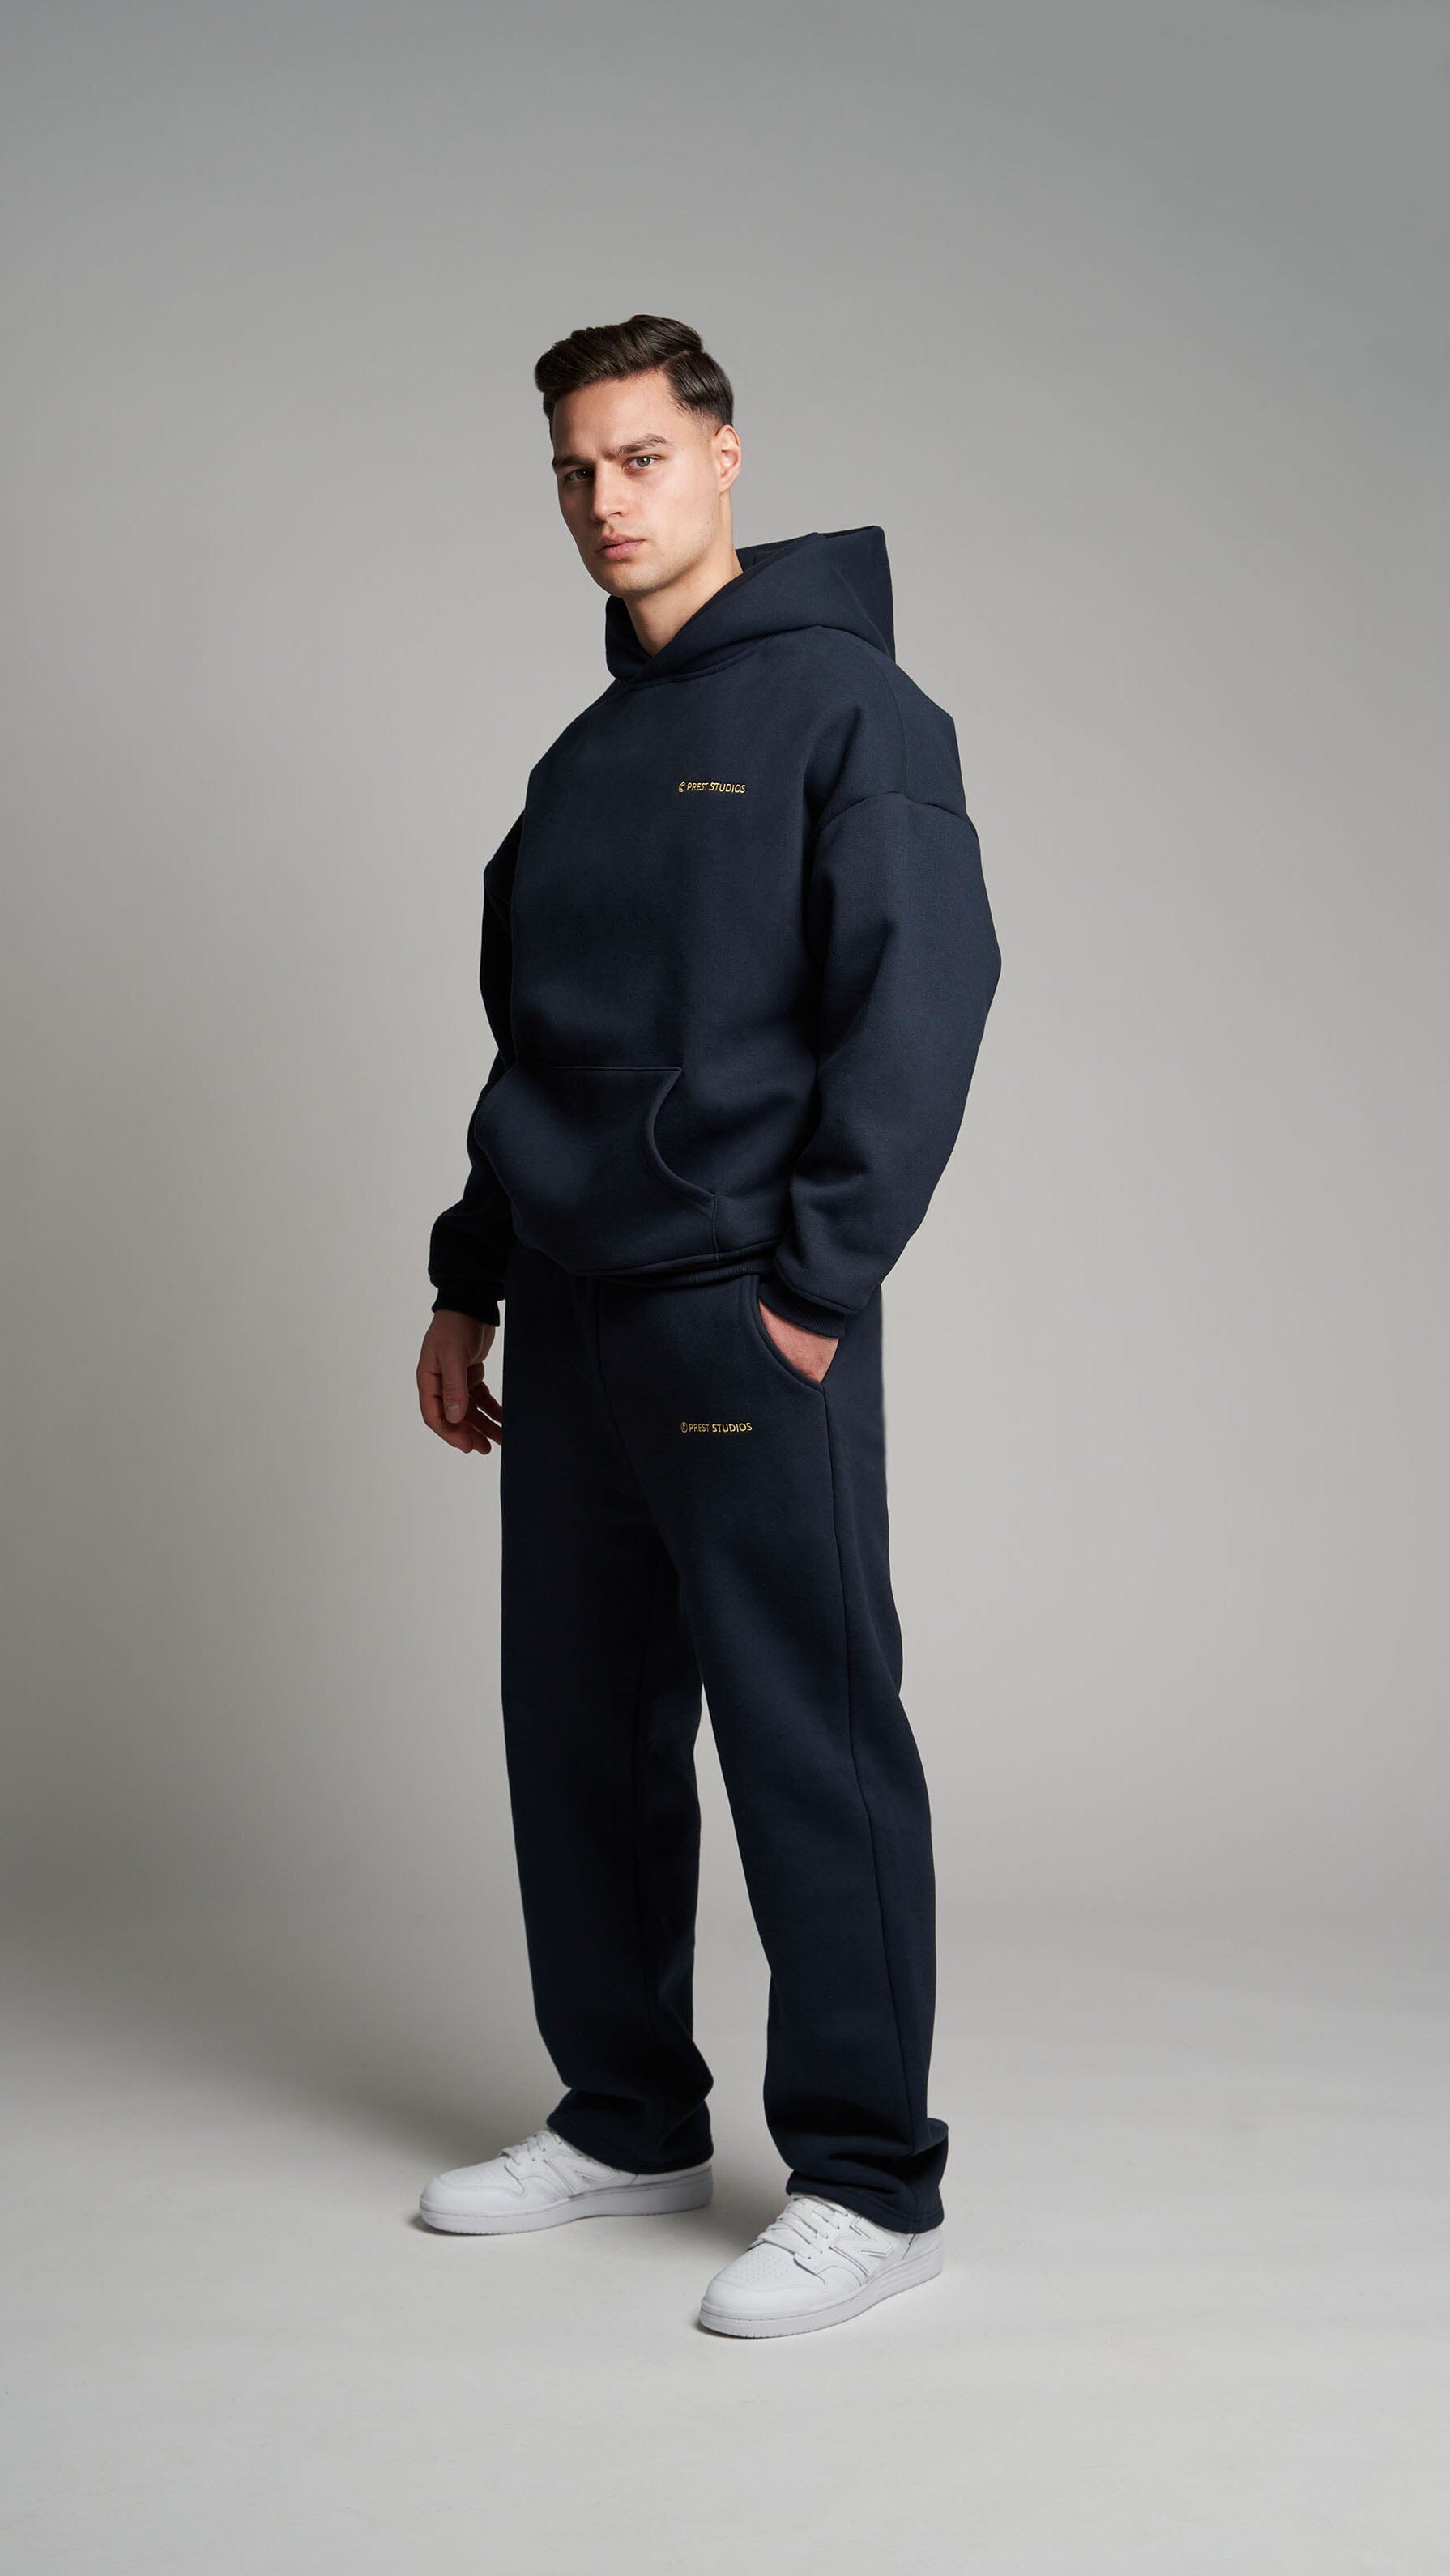 Navy Blue Jogginghose für Männer. Navy Blue Basic Jogginghose für Herren . Navy blue Tracksuit für Männer